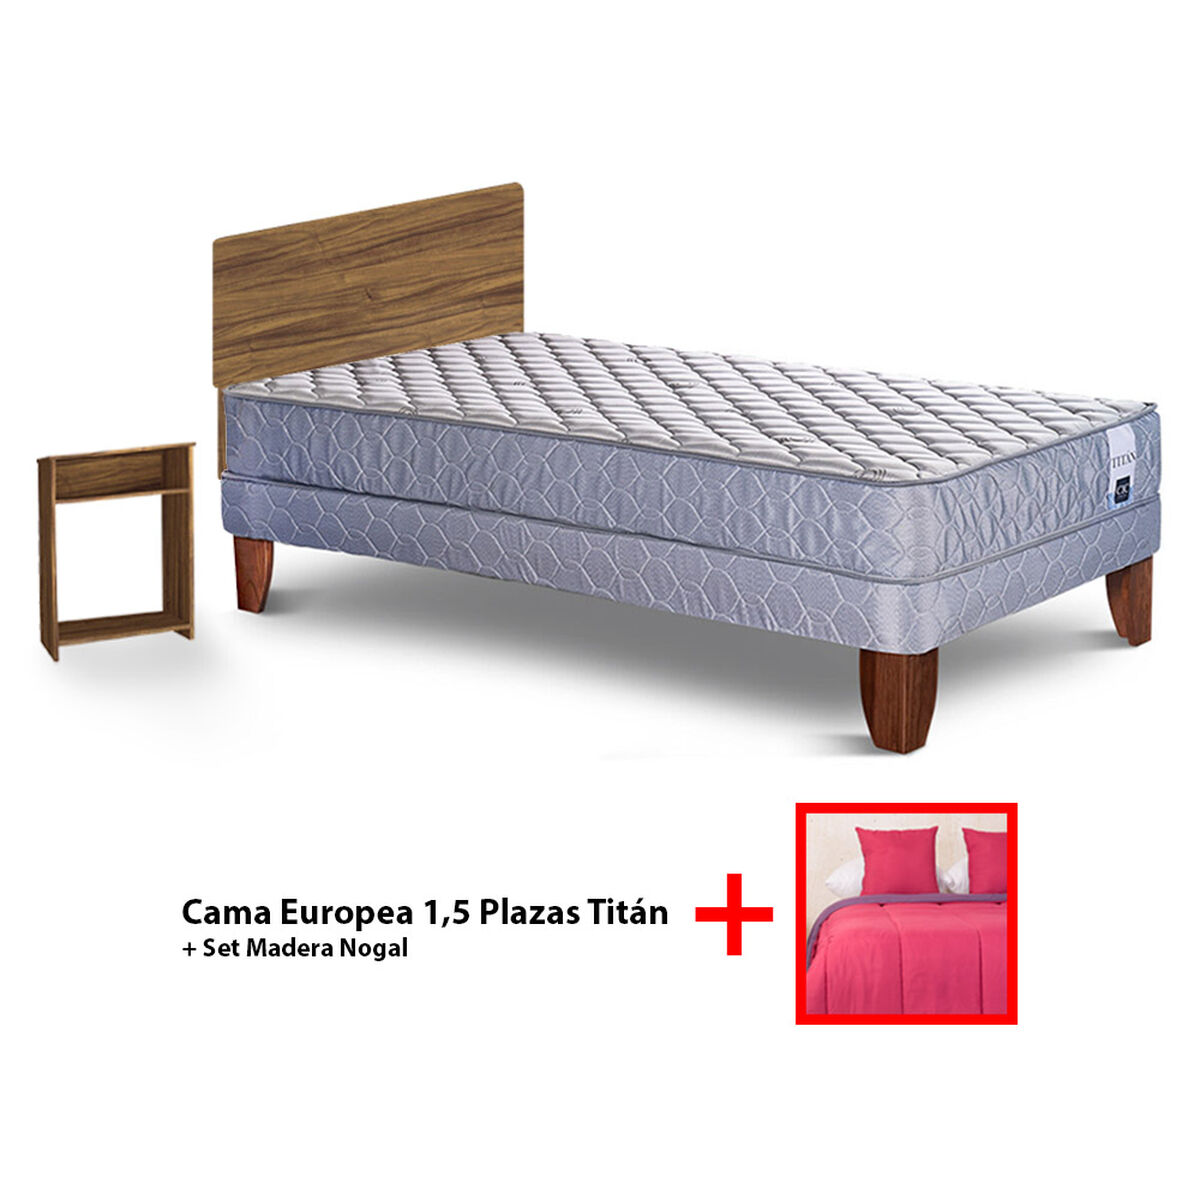 Combo Cama Europea CIC 1,5 Plazas Titán + Set Plumon Bicolor + 2 Cojines + Set Maderas Nogal